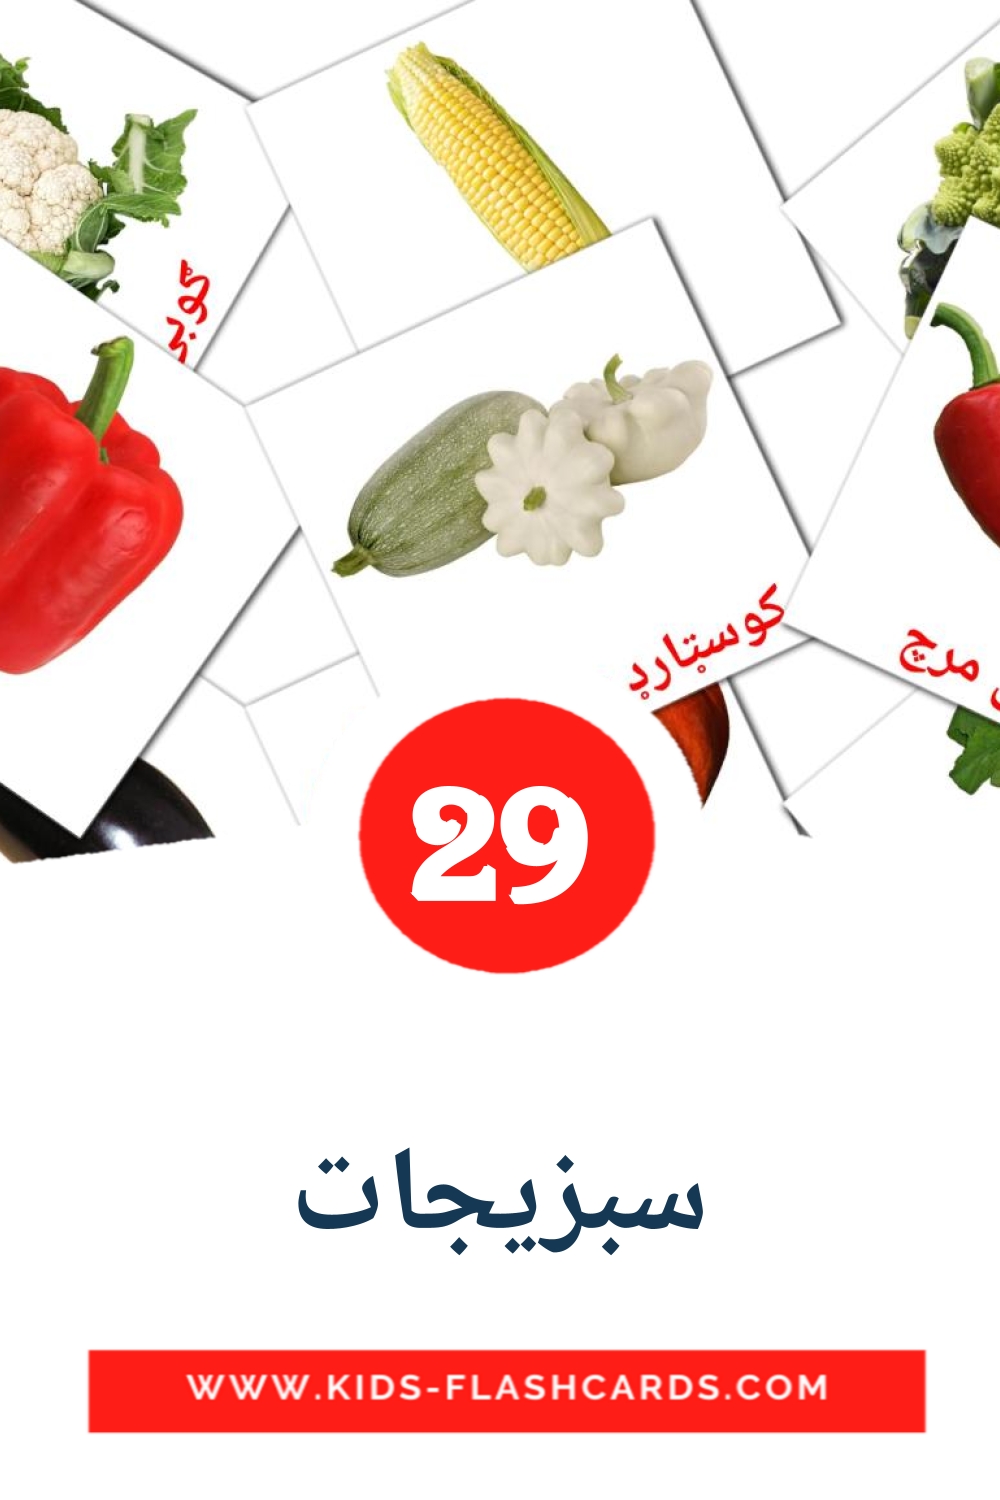 29 سبزیجات Picture Cards for Kindergarden in pashto